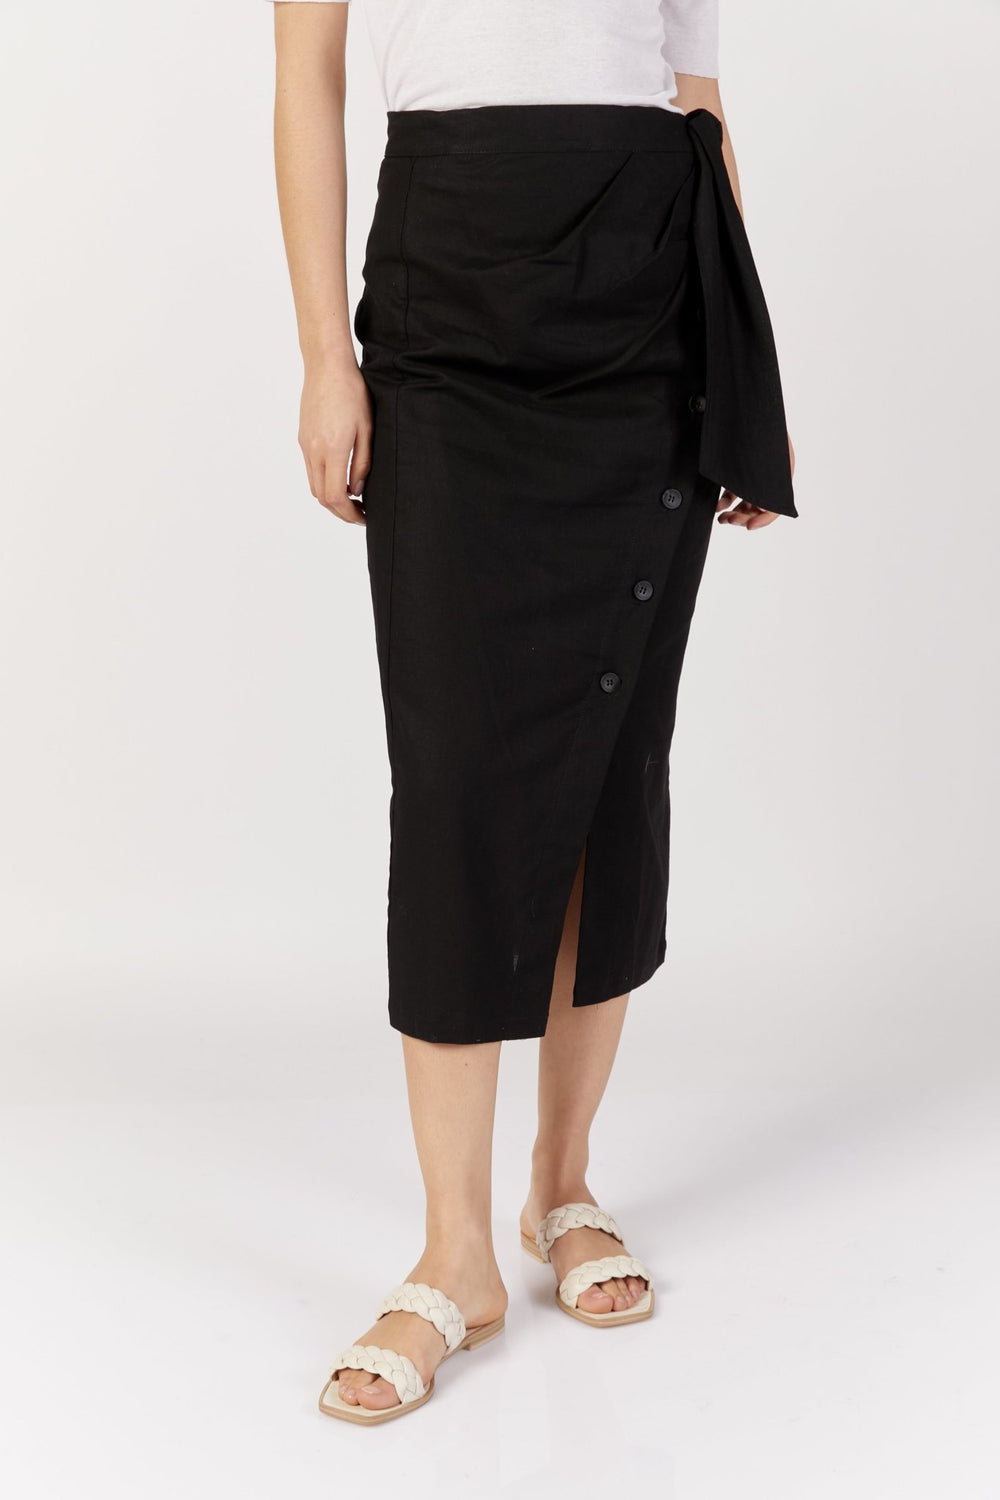 חצאית עפרון עם כפתורים בצבע שחור - Noritamy